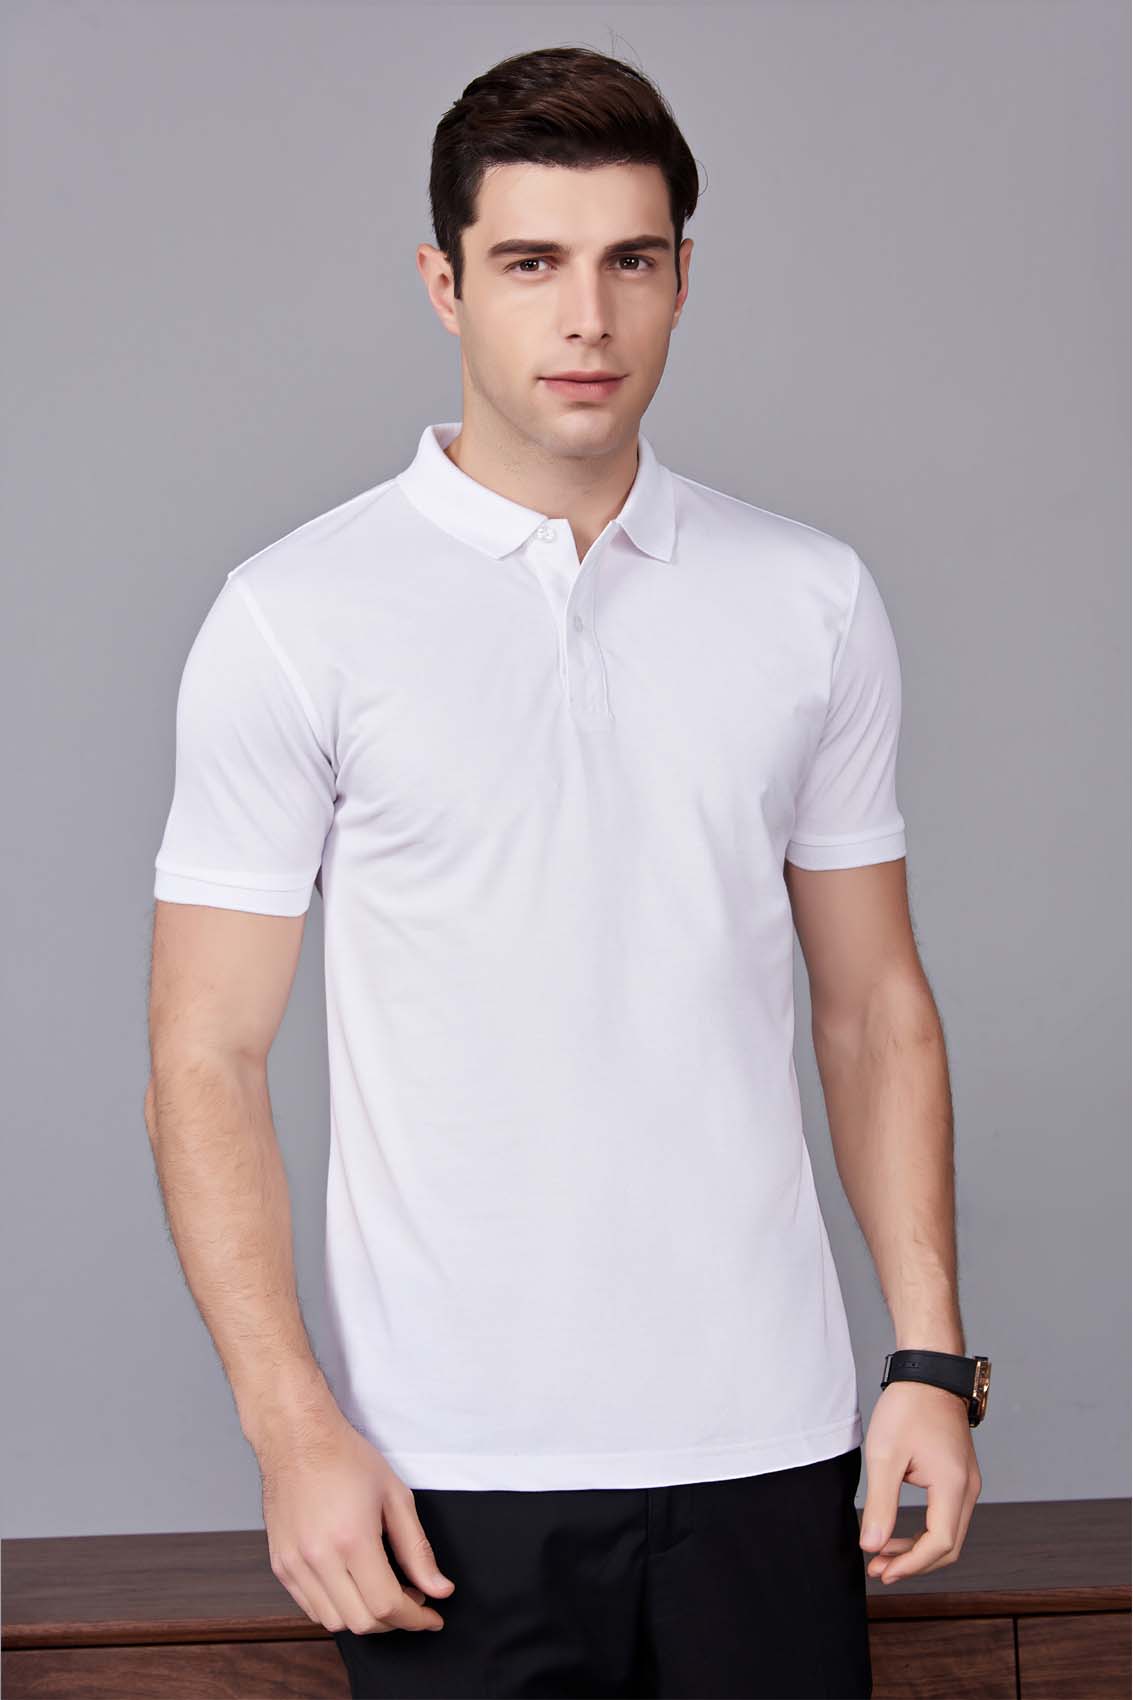 夏季男女同款白色短袖T恤衫-MAD506bs